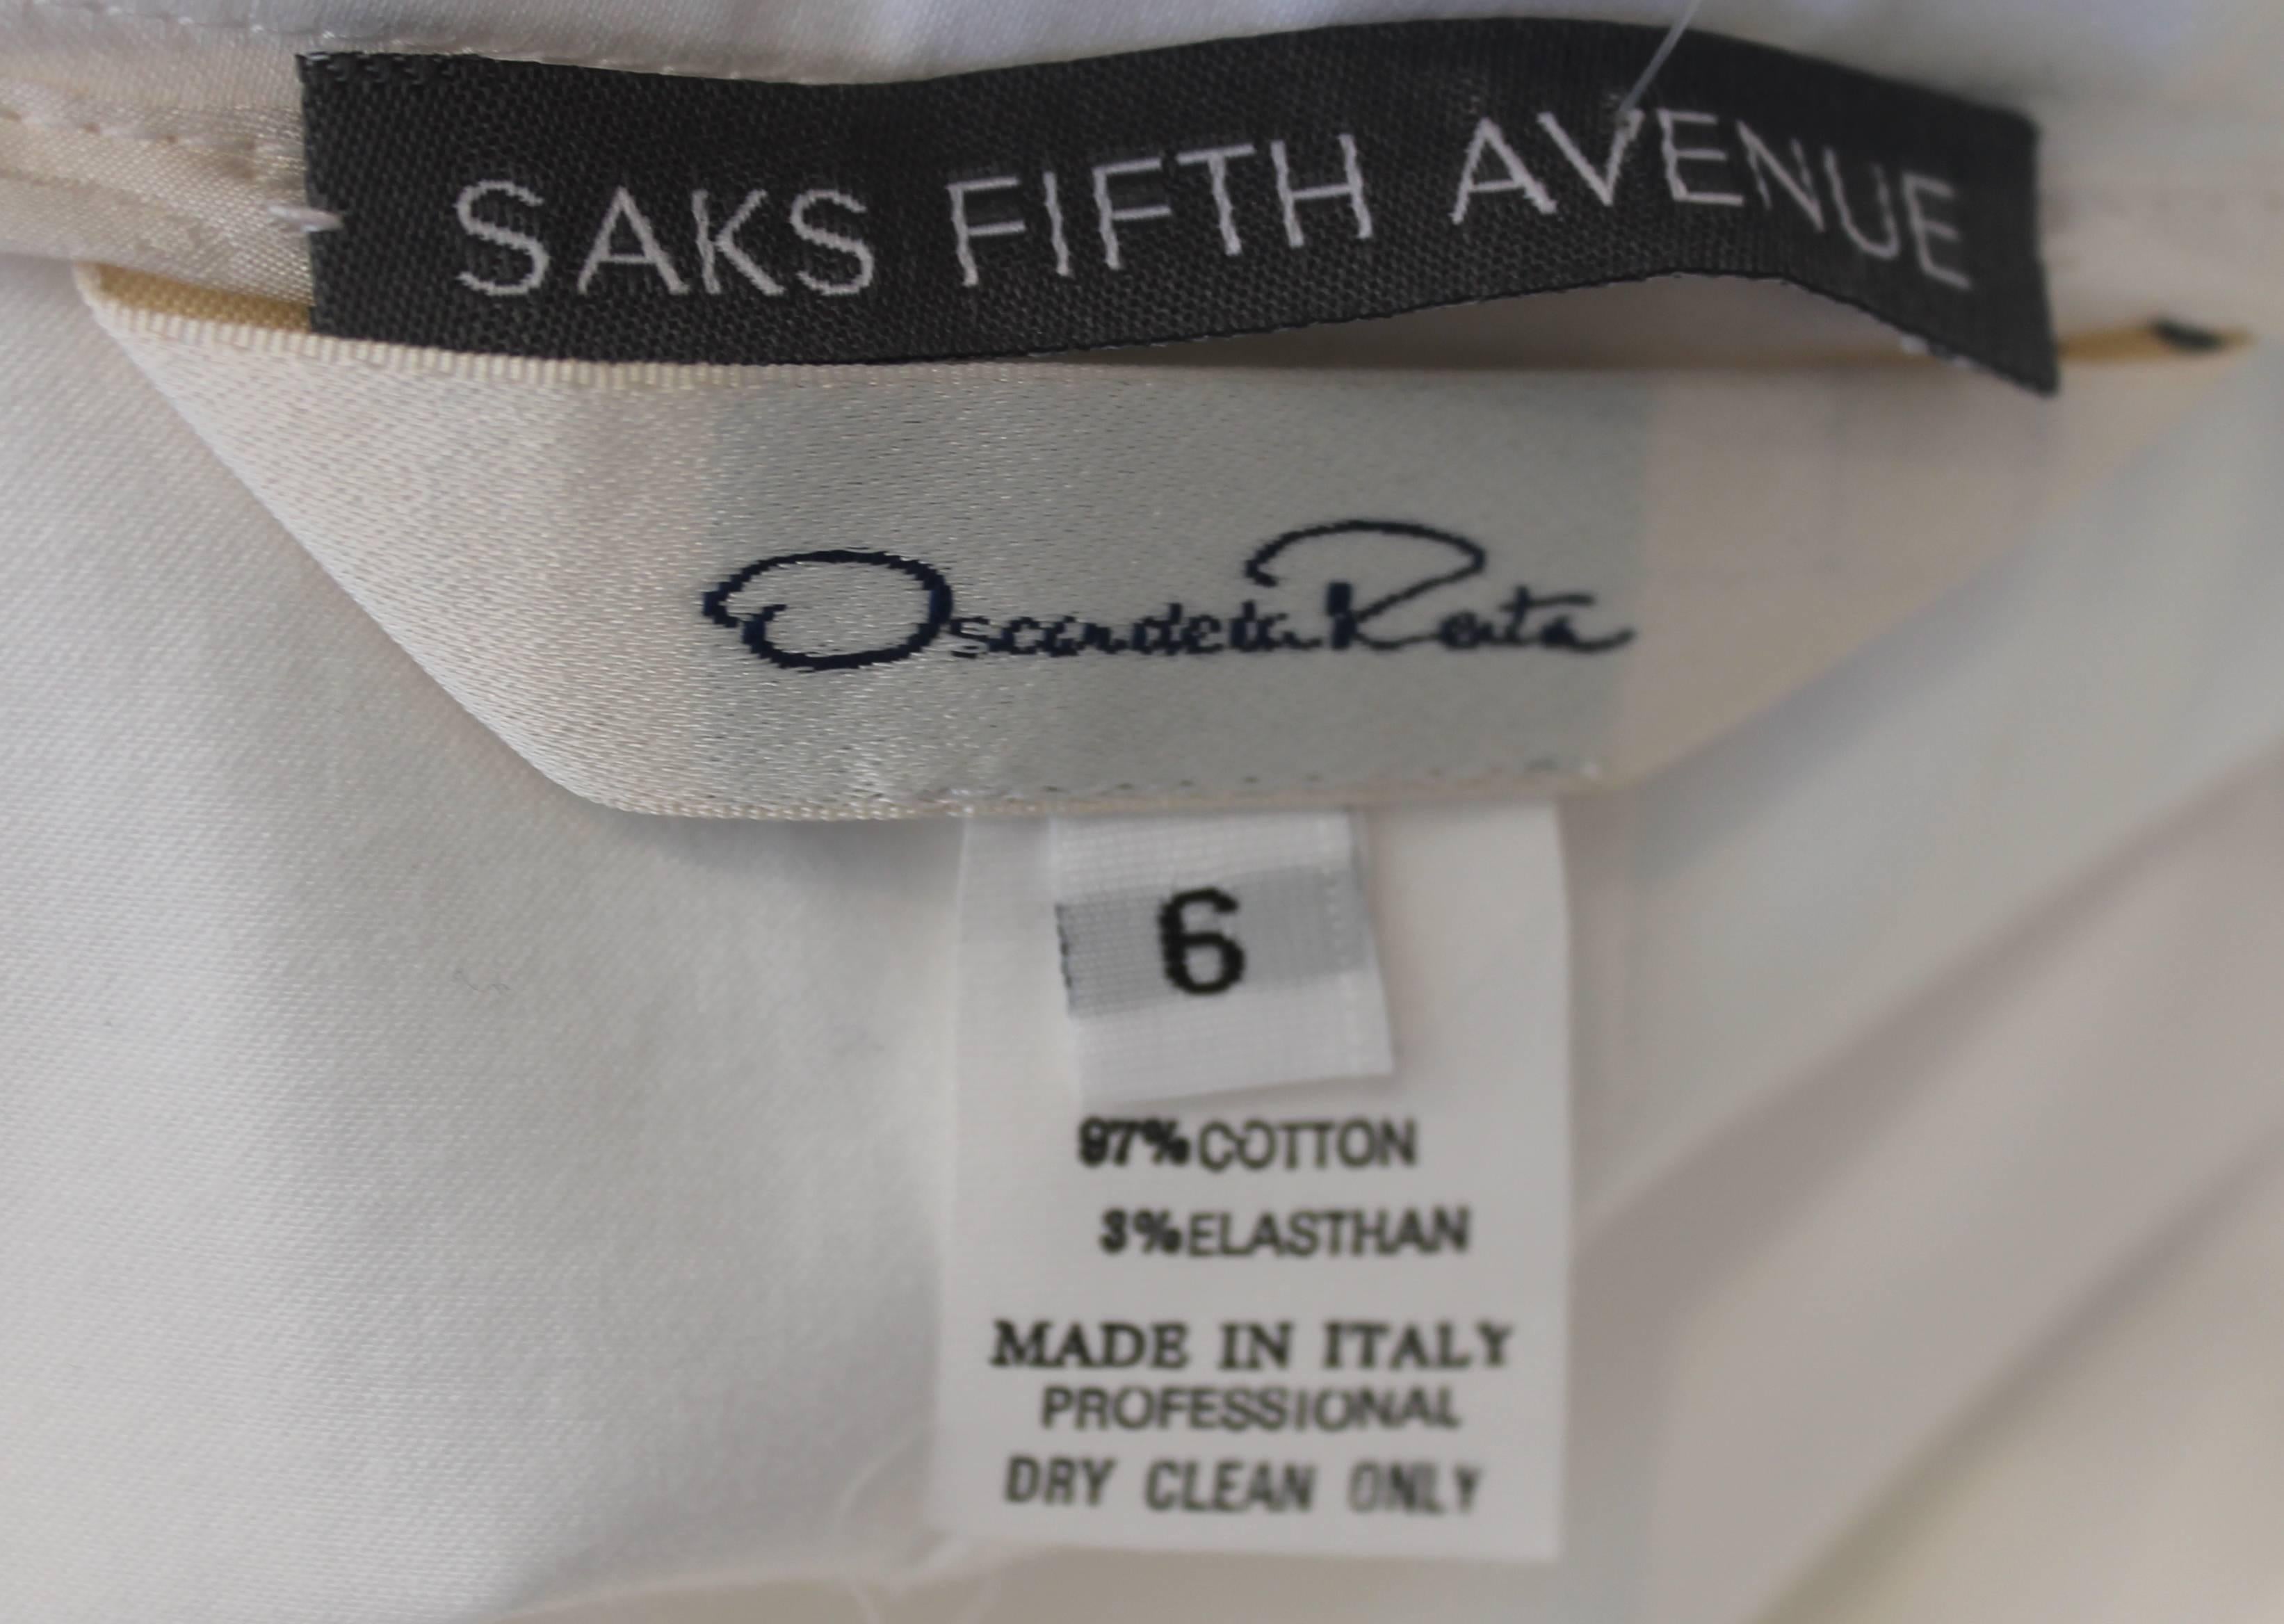 Oscar de la Renta White Cotton Tea Length Skirt with Pleats and Buttons - 6 3